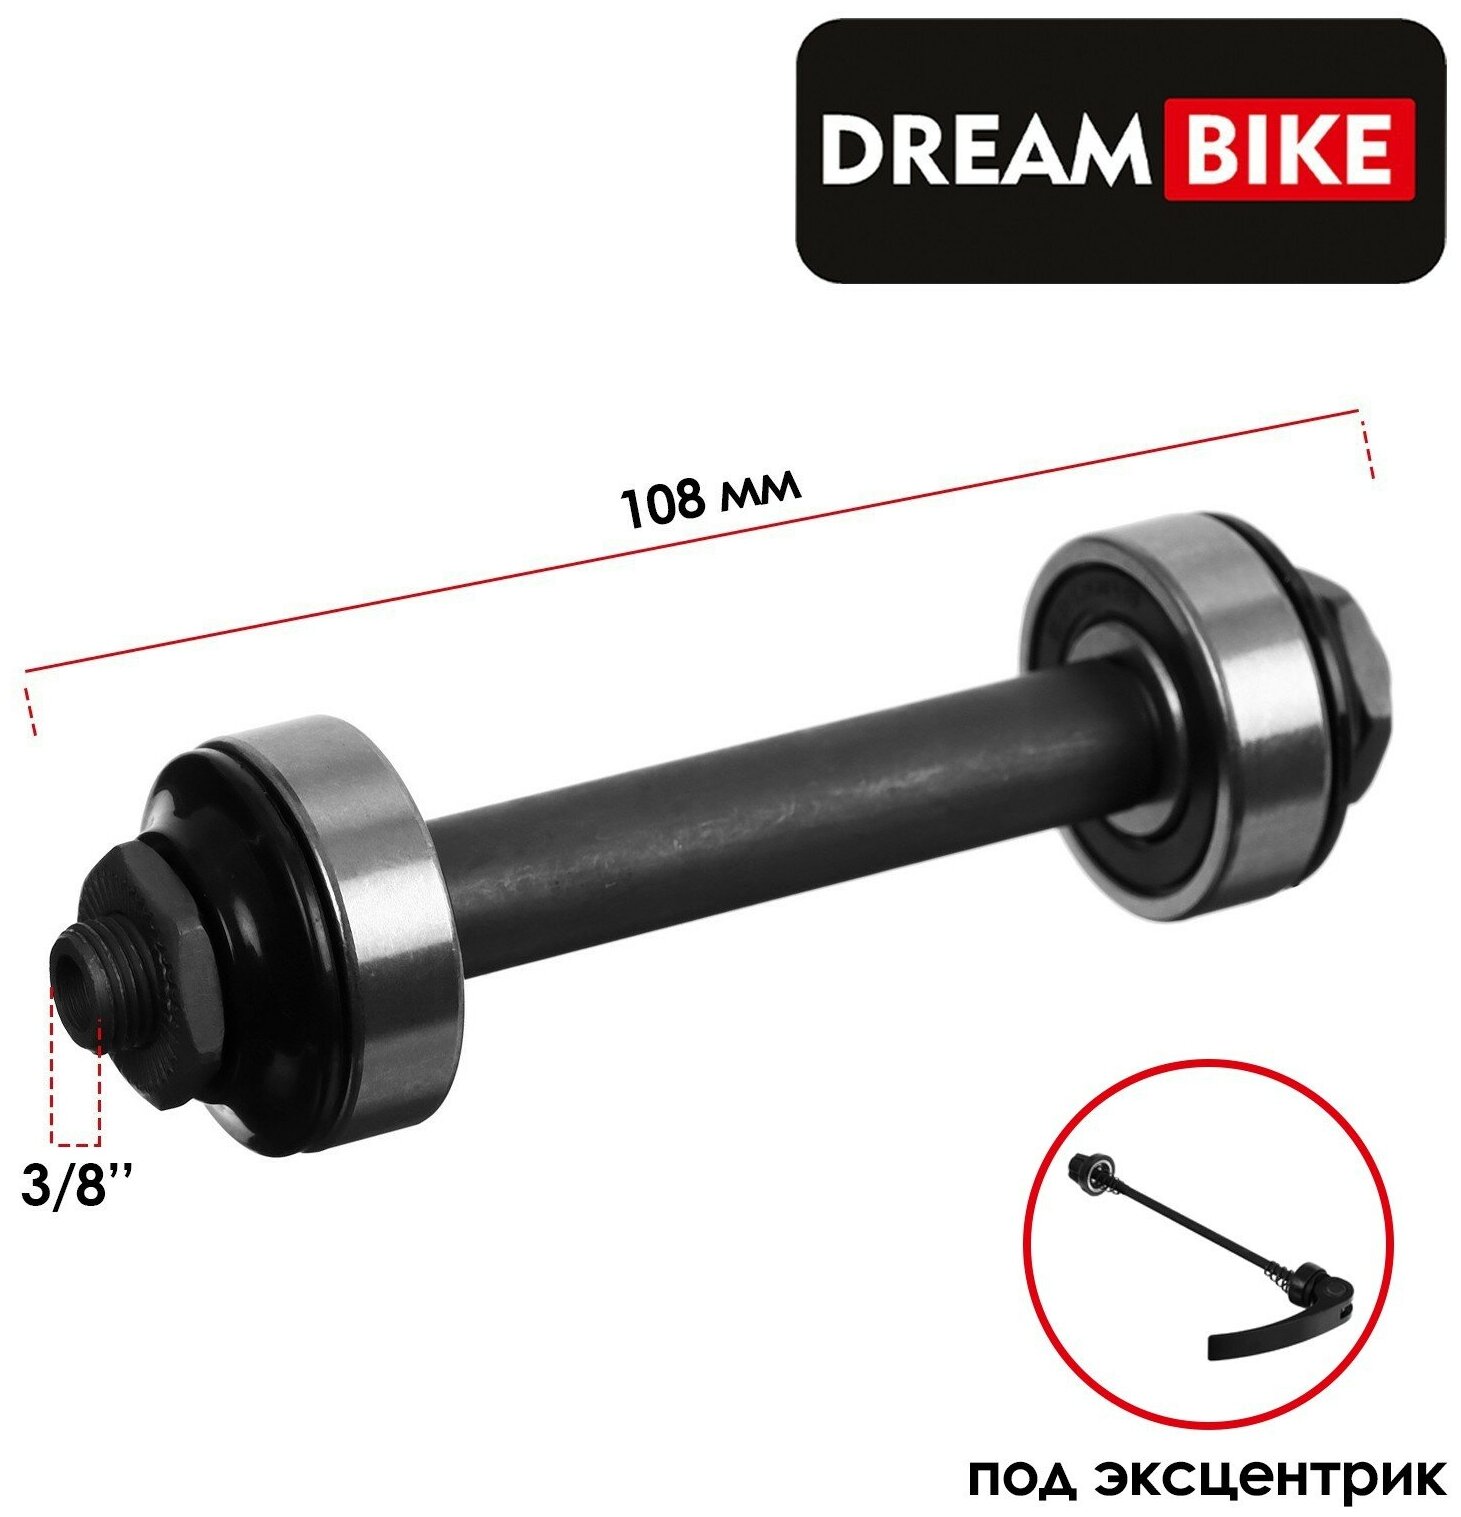 Ось Dream Bike, передняя, под эксцентрик, диаметр 3/8", длина 108 мм, пром подшипник, OLD 100, цвет черный